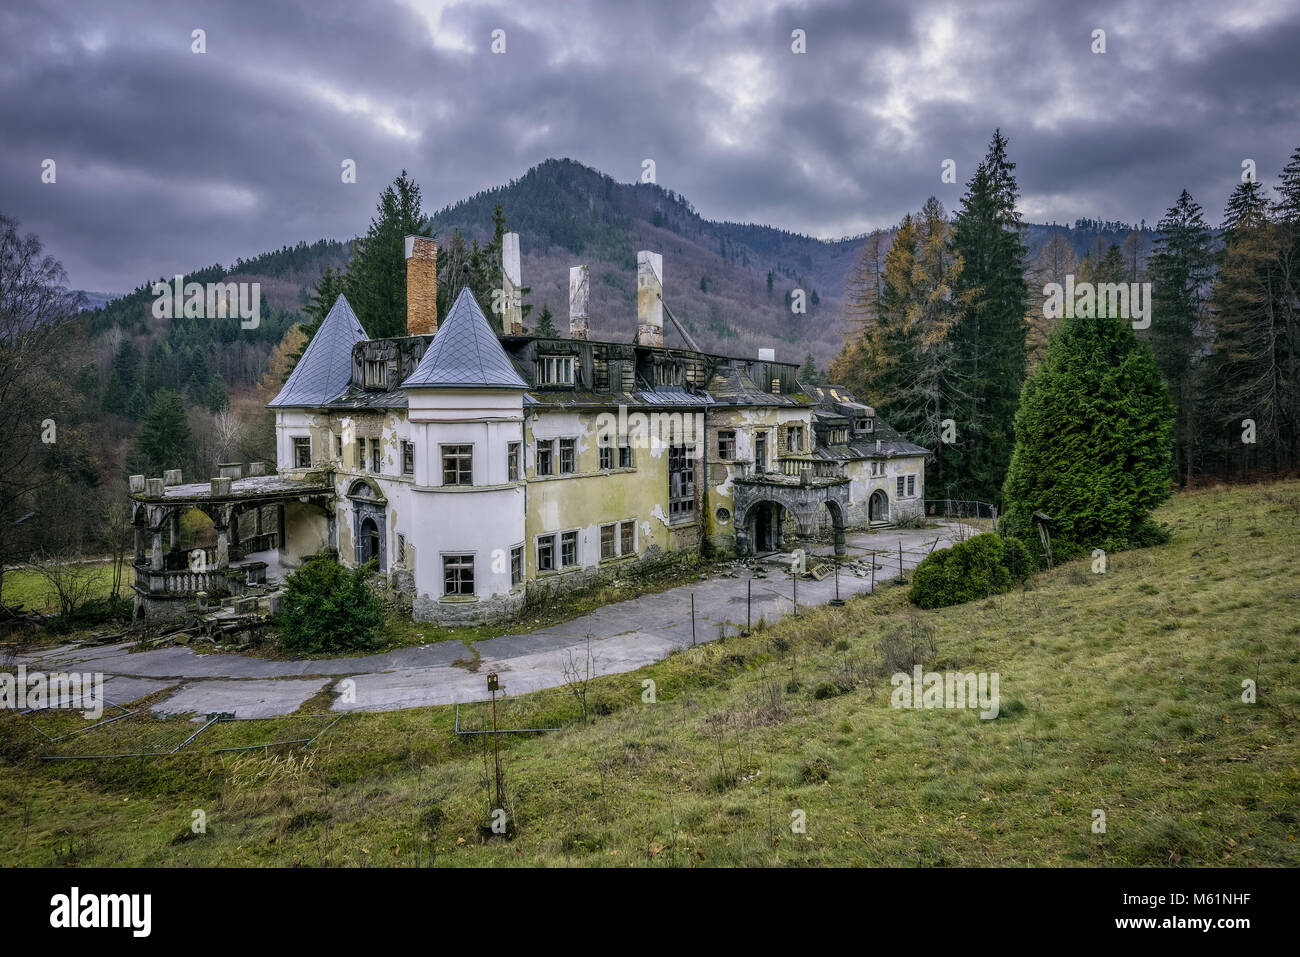 Abandoned health spa resort in Slovakia Stock Photo